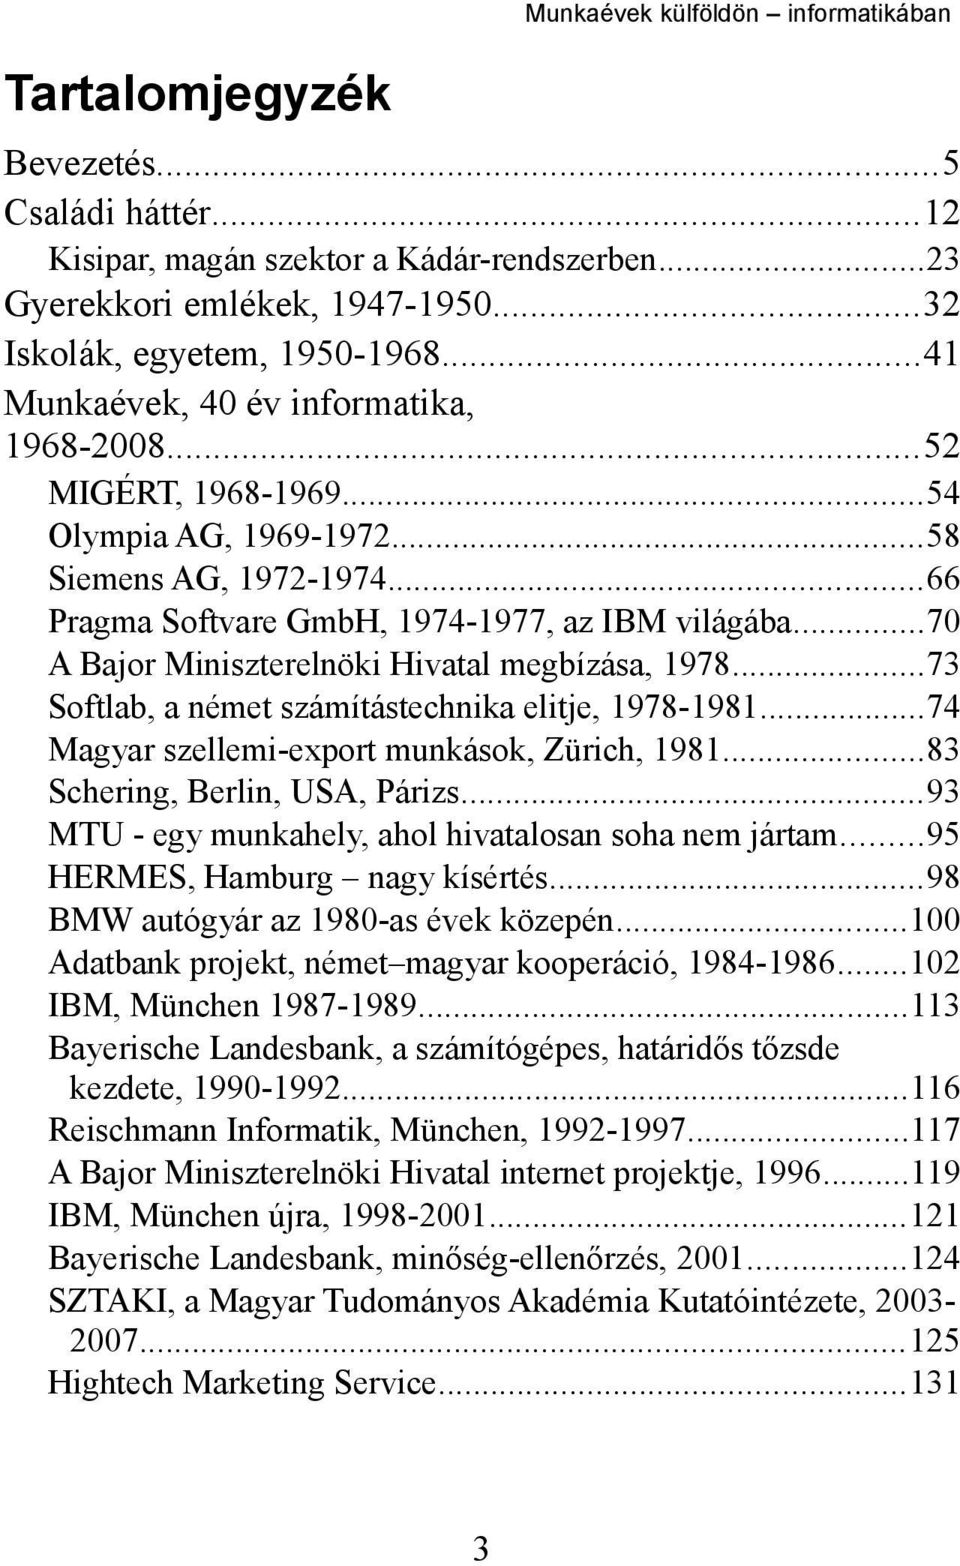 ..70 A Bajor Miniszterelnöki Hivatal megbízása, 1978...73 Softlab, a német számítástechnika elitje, 1978-1981...74 Magyar szellemi-export munkások, Zürich, 1981...83 Schering, Berlin, USA, Párizs.